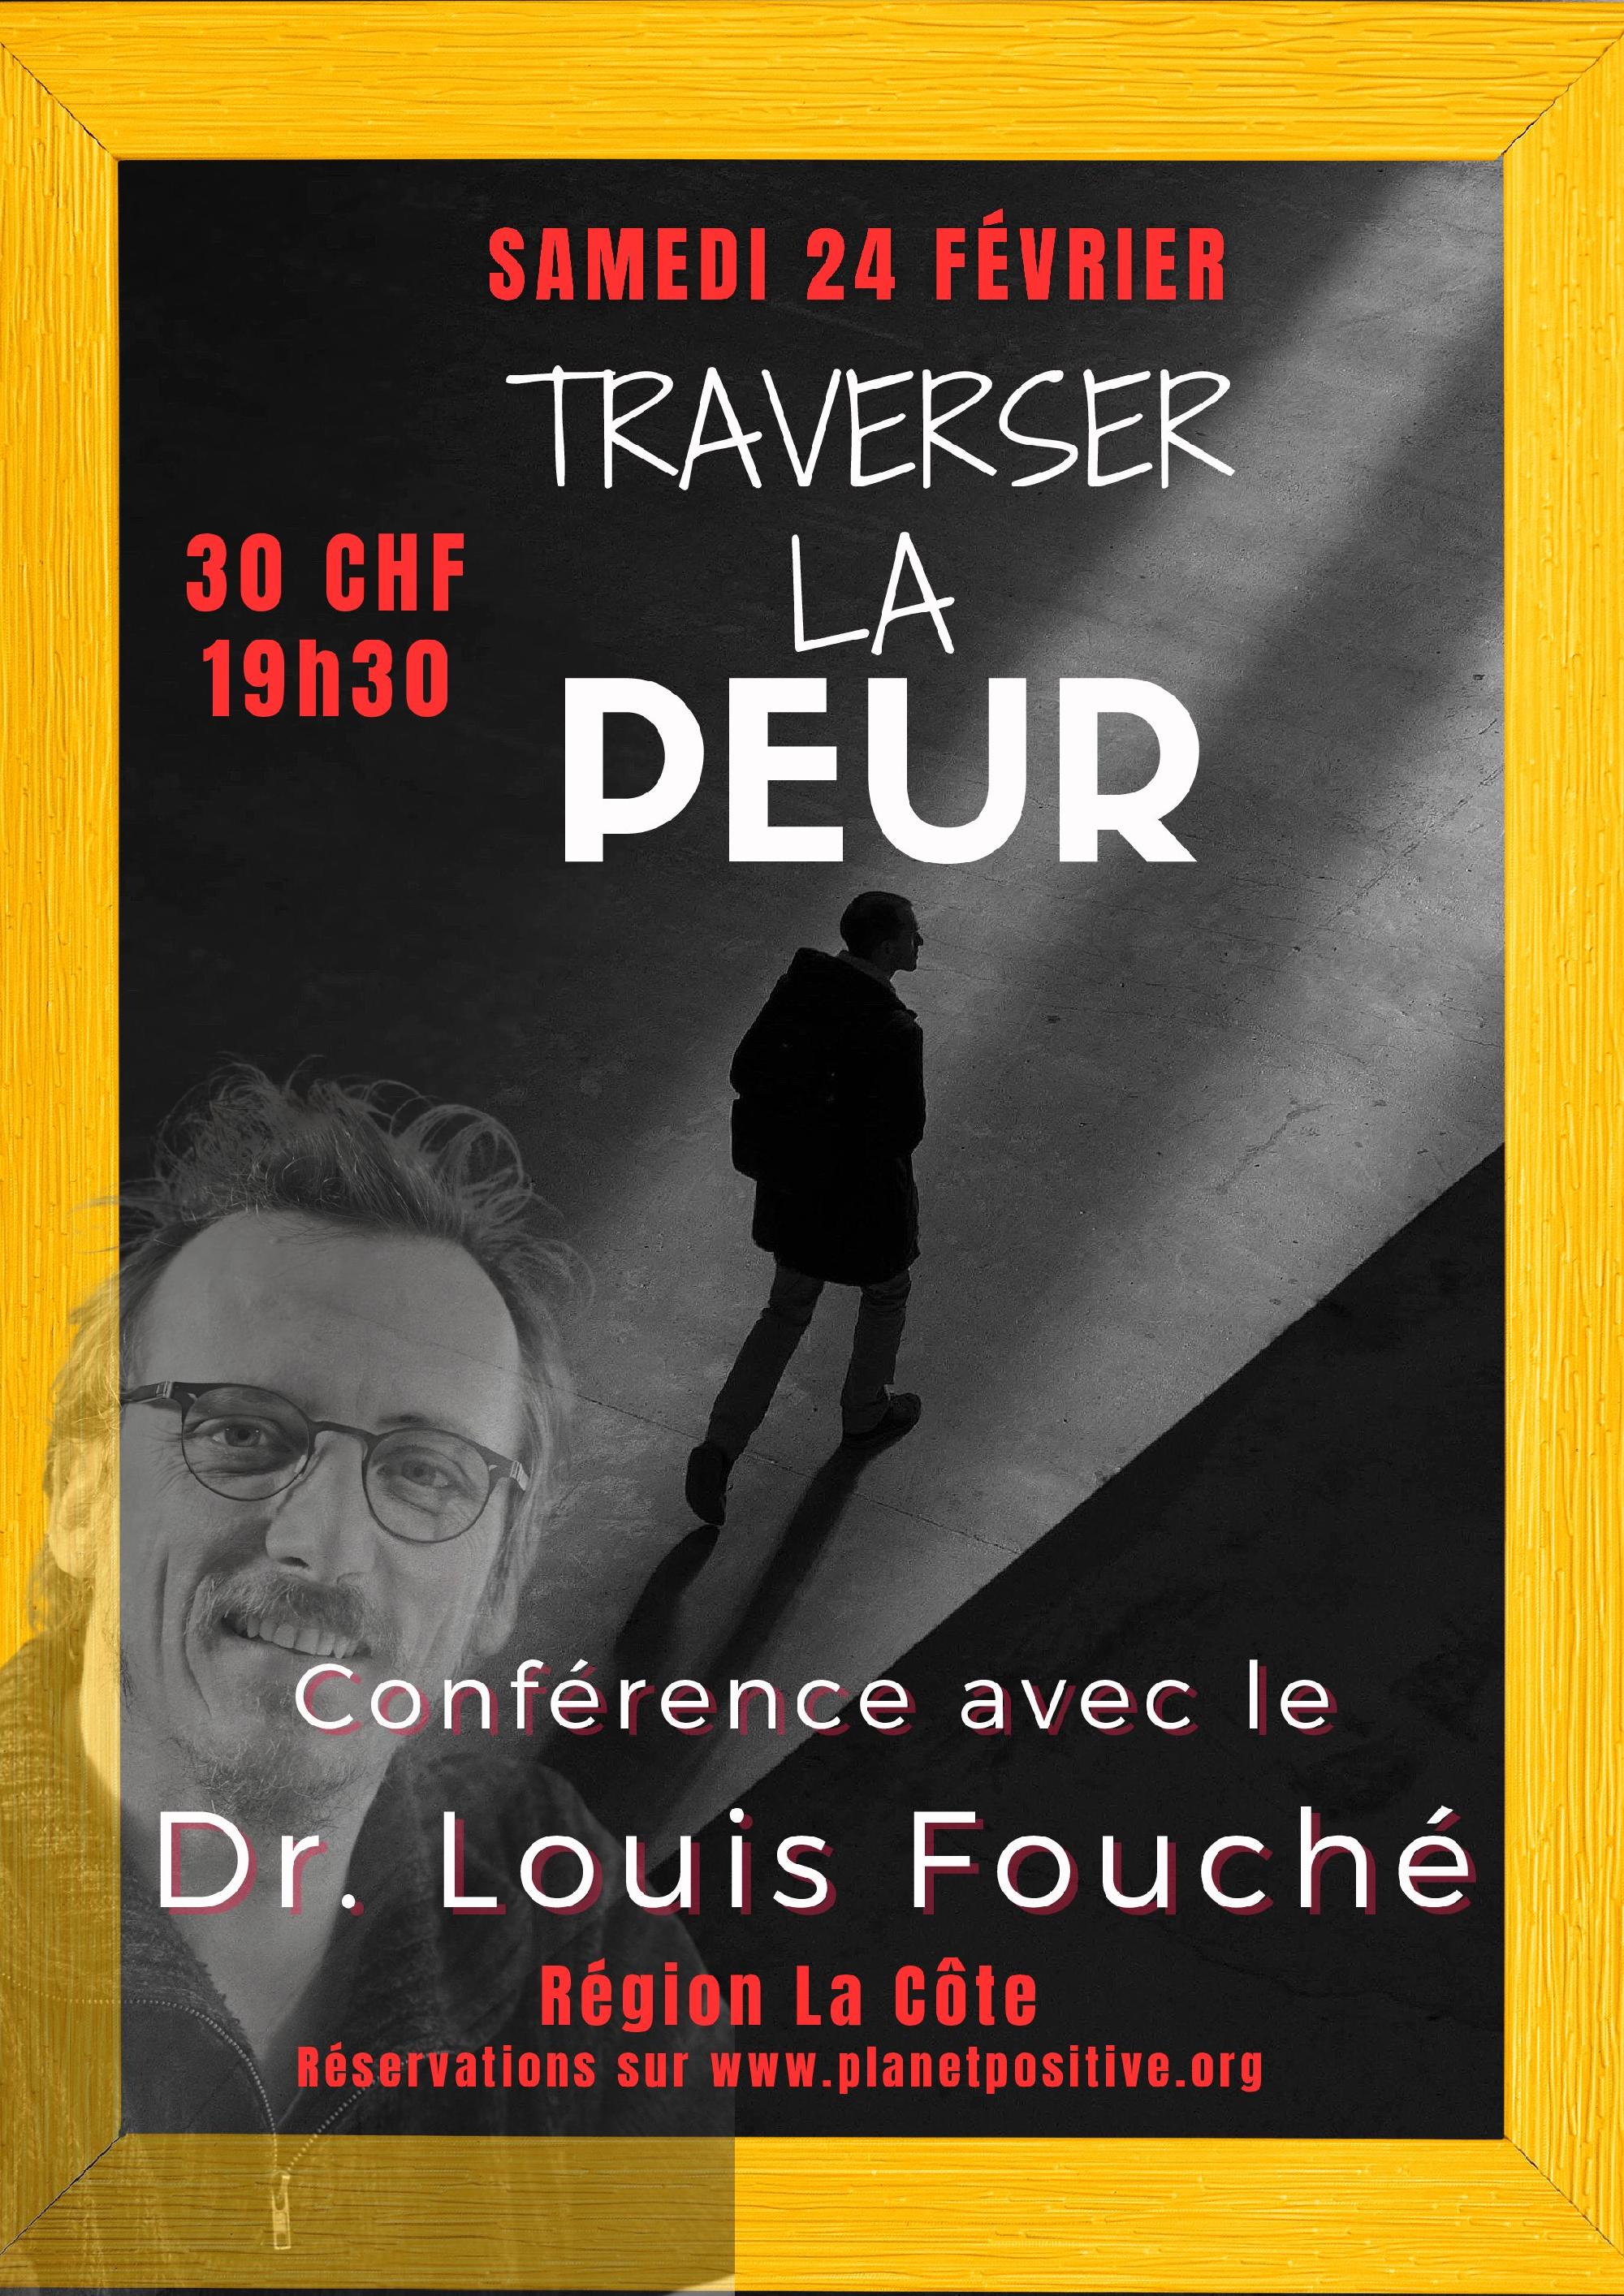 « TRAVERSER LA PEUR », CONFÉRENCE AVEC LE DR. LOUIS FOUCHÉ
